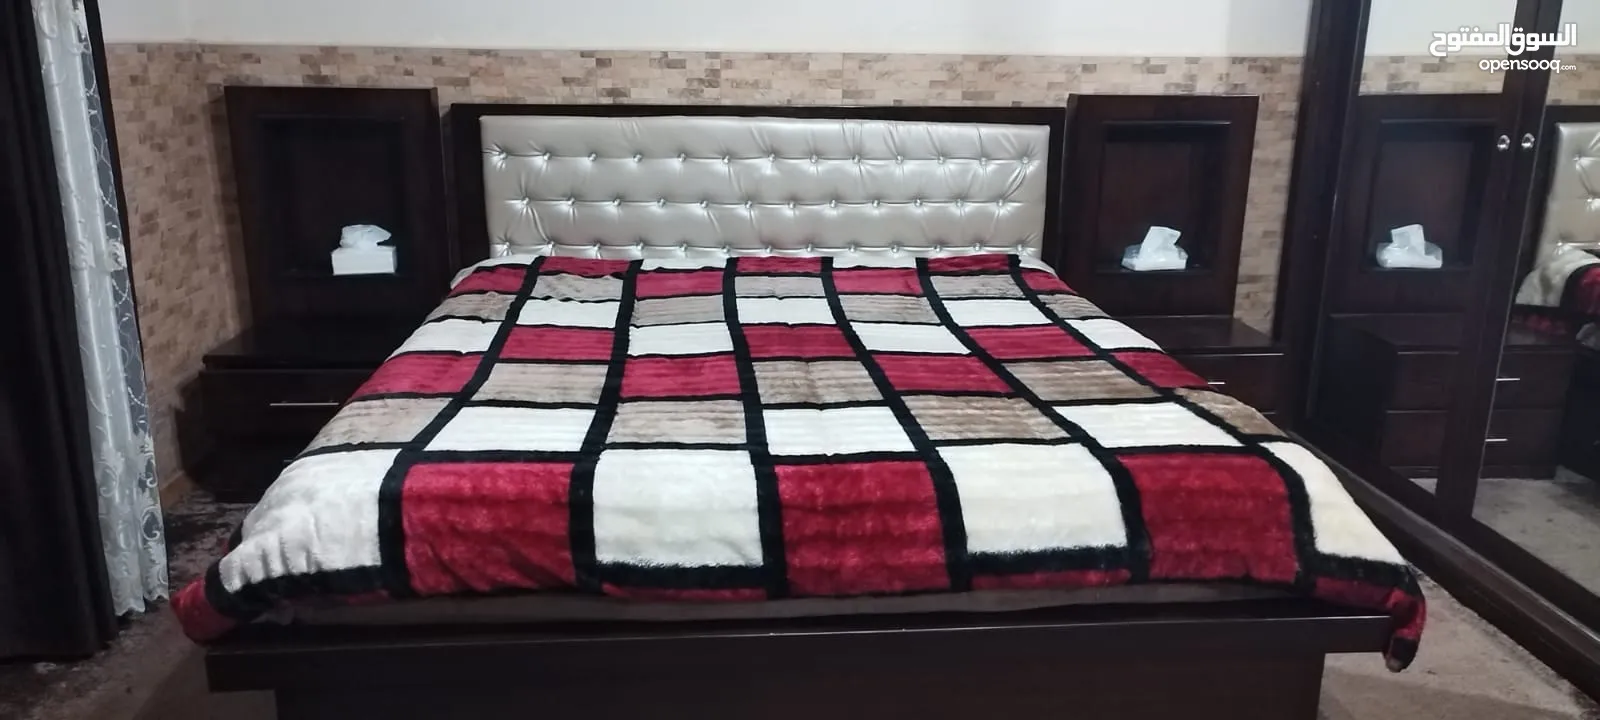 غرفة نوم مستعملة بحالة ممتازة للبيع. /السعر قابل للتفاوض بشيء بسيط.